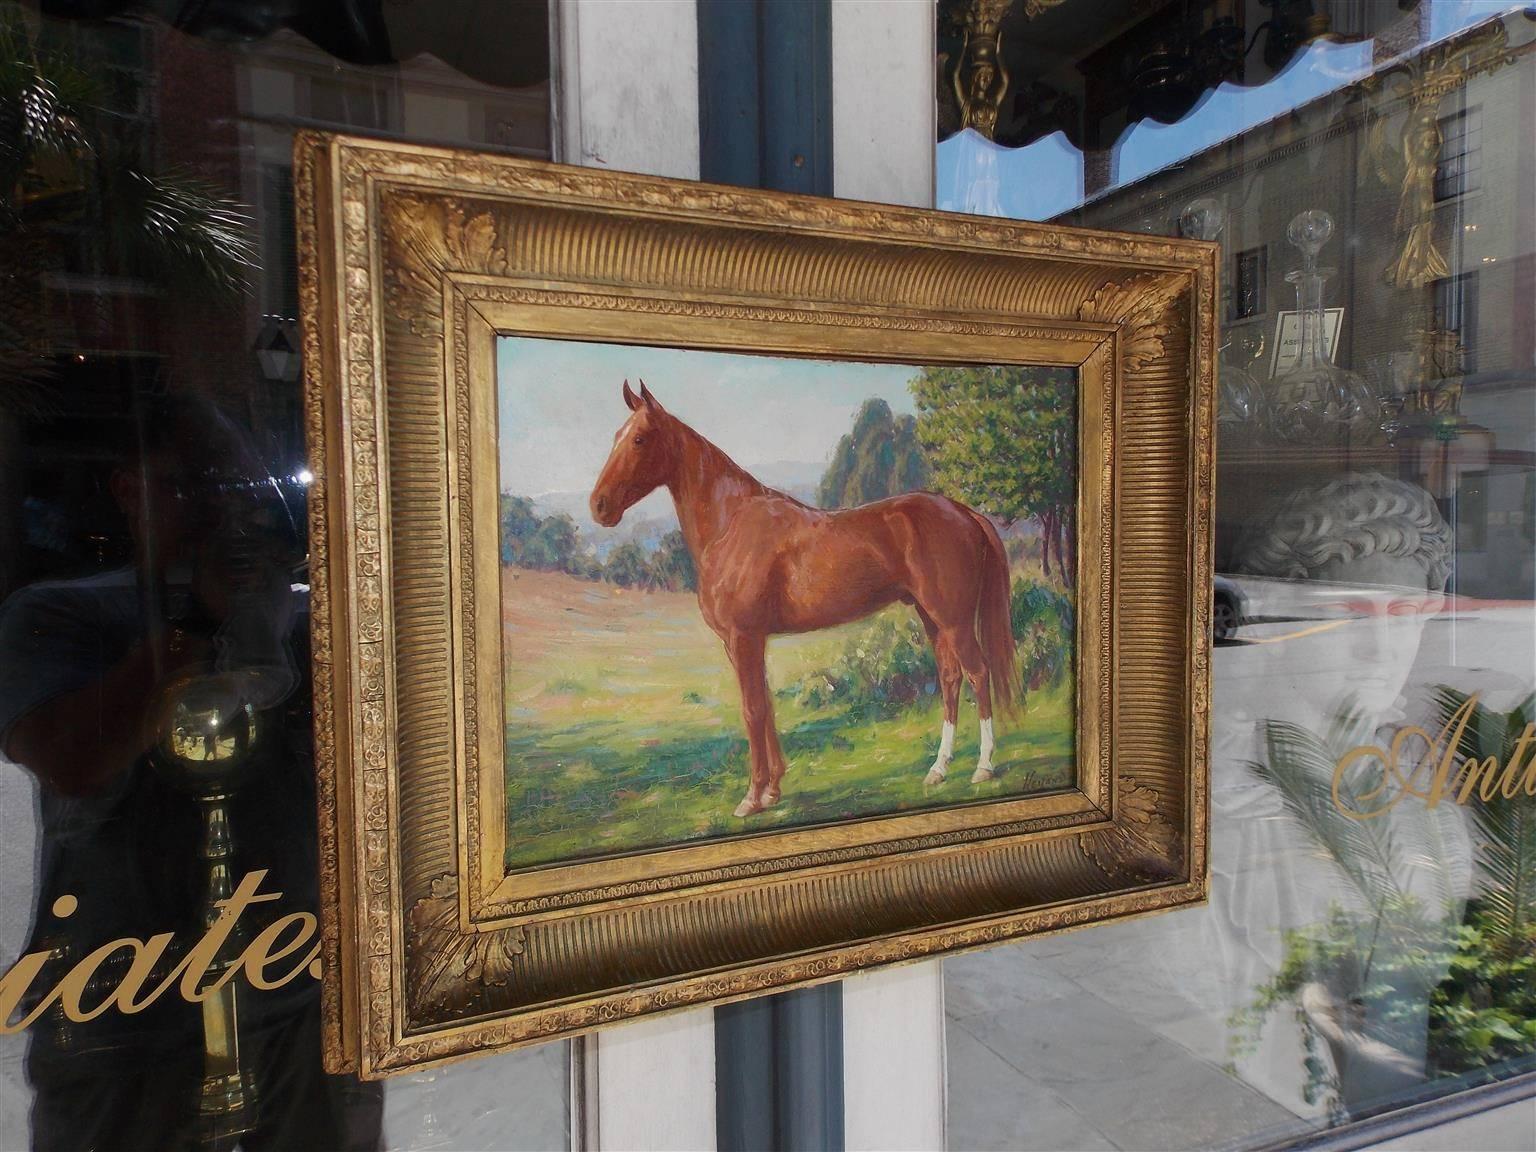 Portrait américain à l'huile sur carton d'un paysage de chevaux dans le cadre floral doré d'origine. Signé James Weiland, (1872-1968) New York, début du XXe siècle.

Weiland a étudié à l'Académie royale de Munich, à Colarossi à Paris, à l'Art